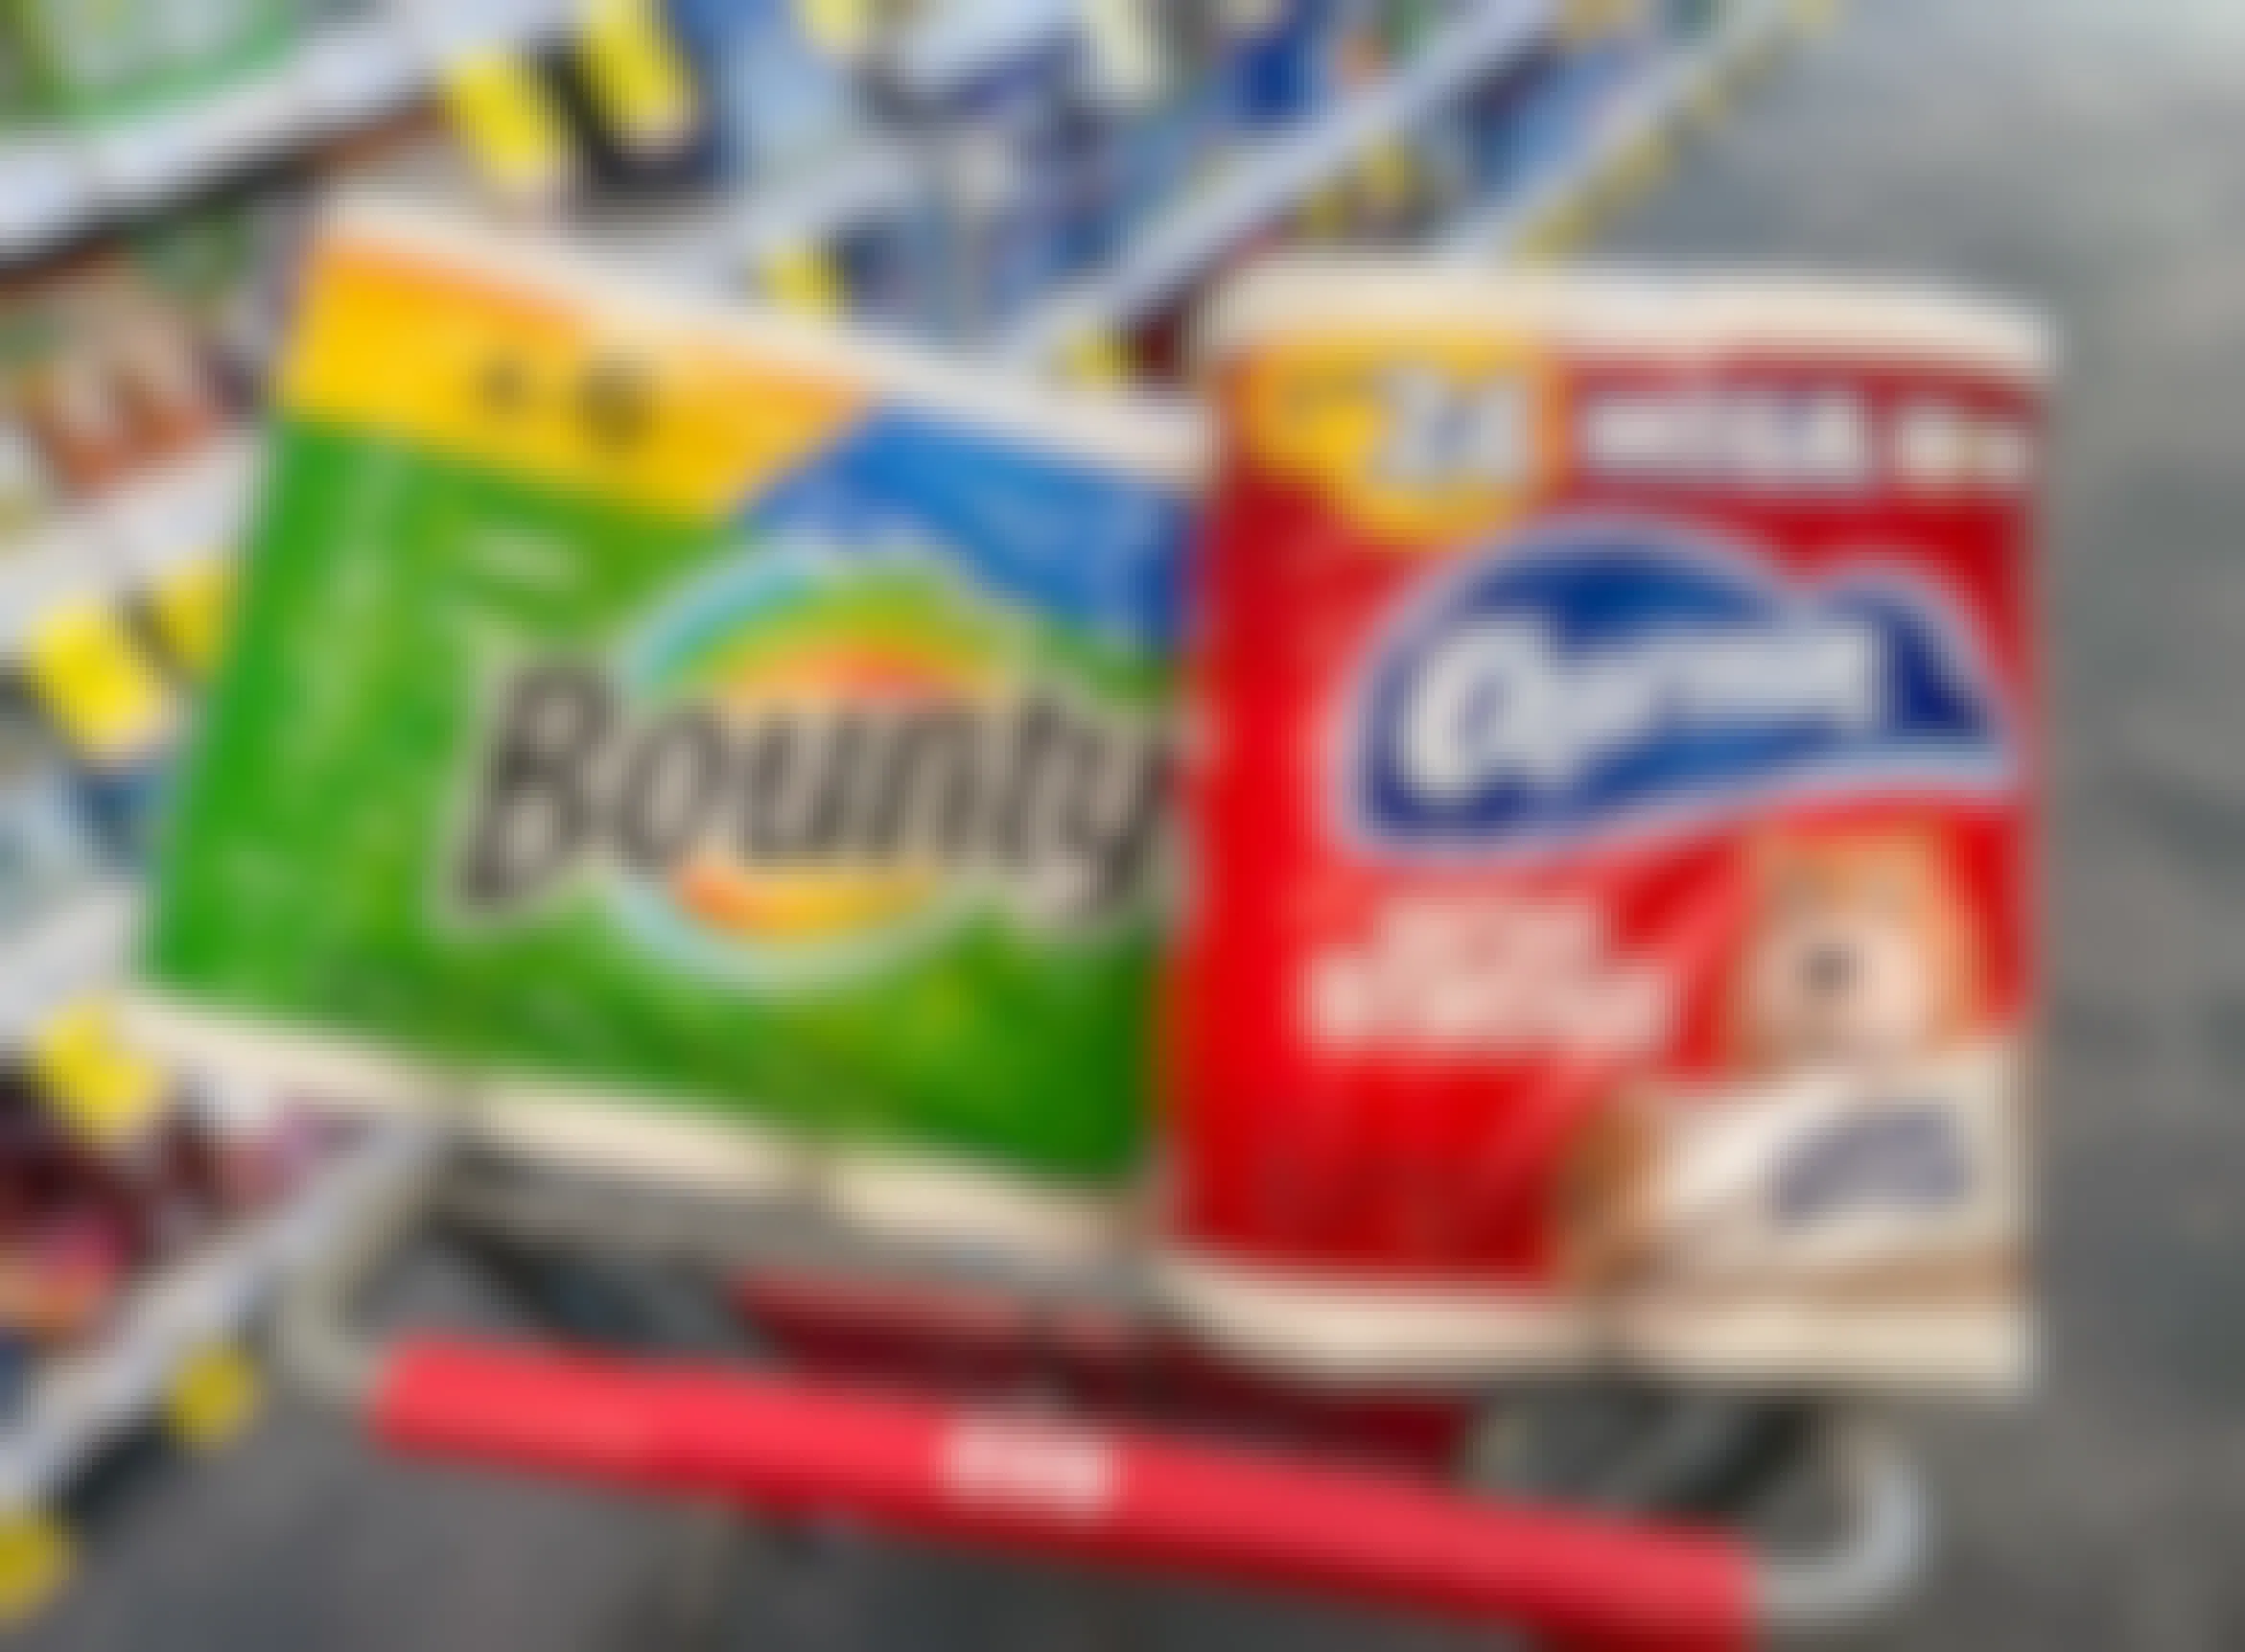 cvs-charmin-bounty-paper-towel-toilet-paper-deal-sale-coupon-em-nov-202151